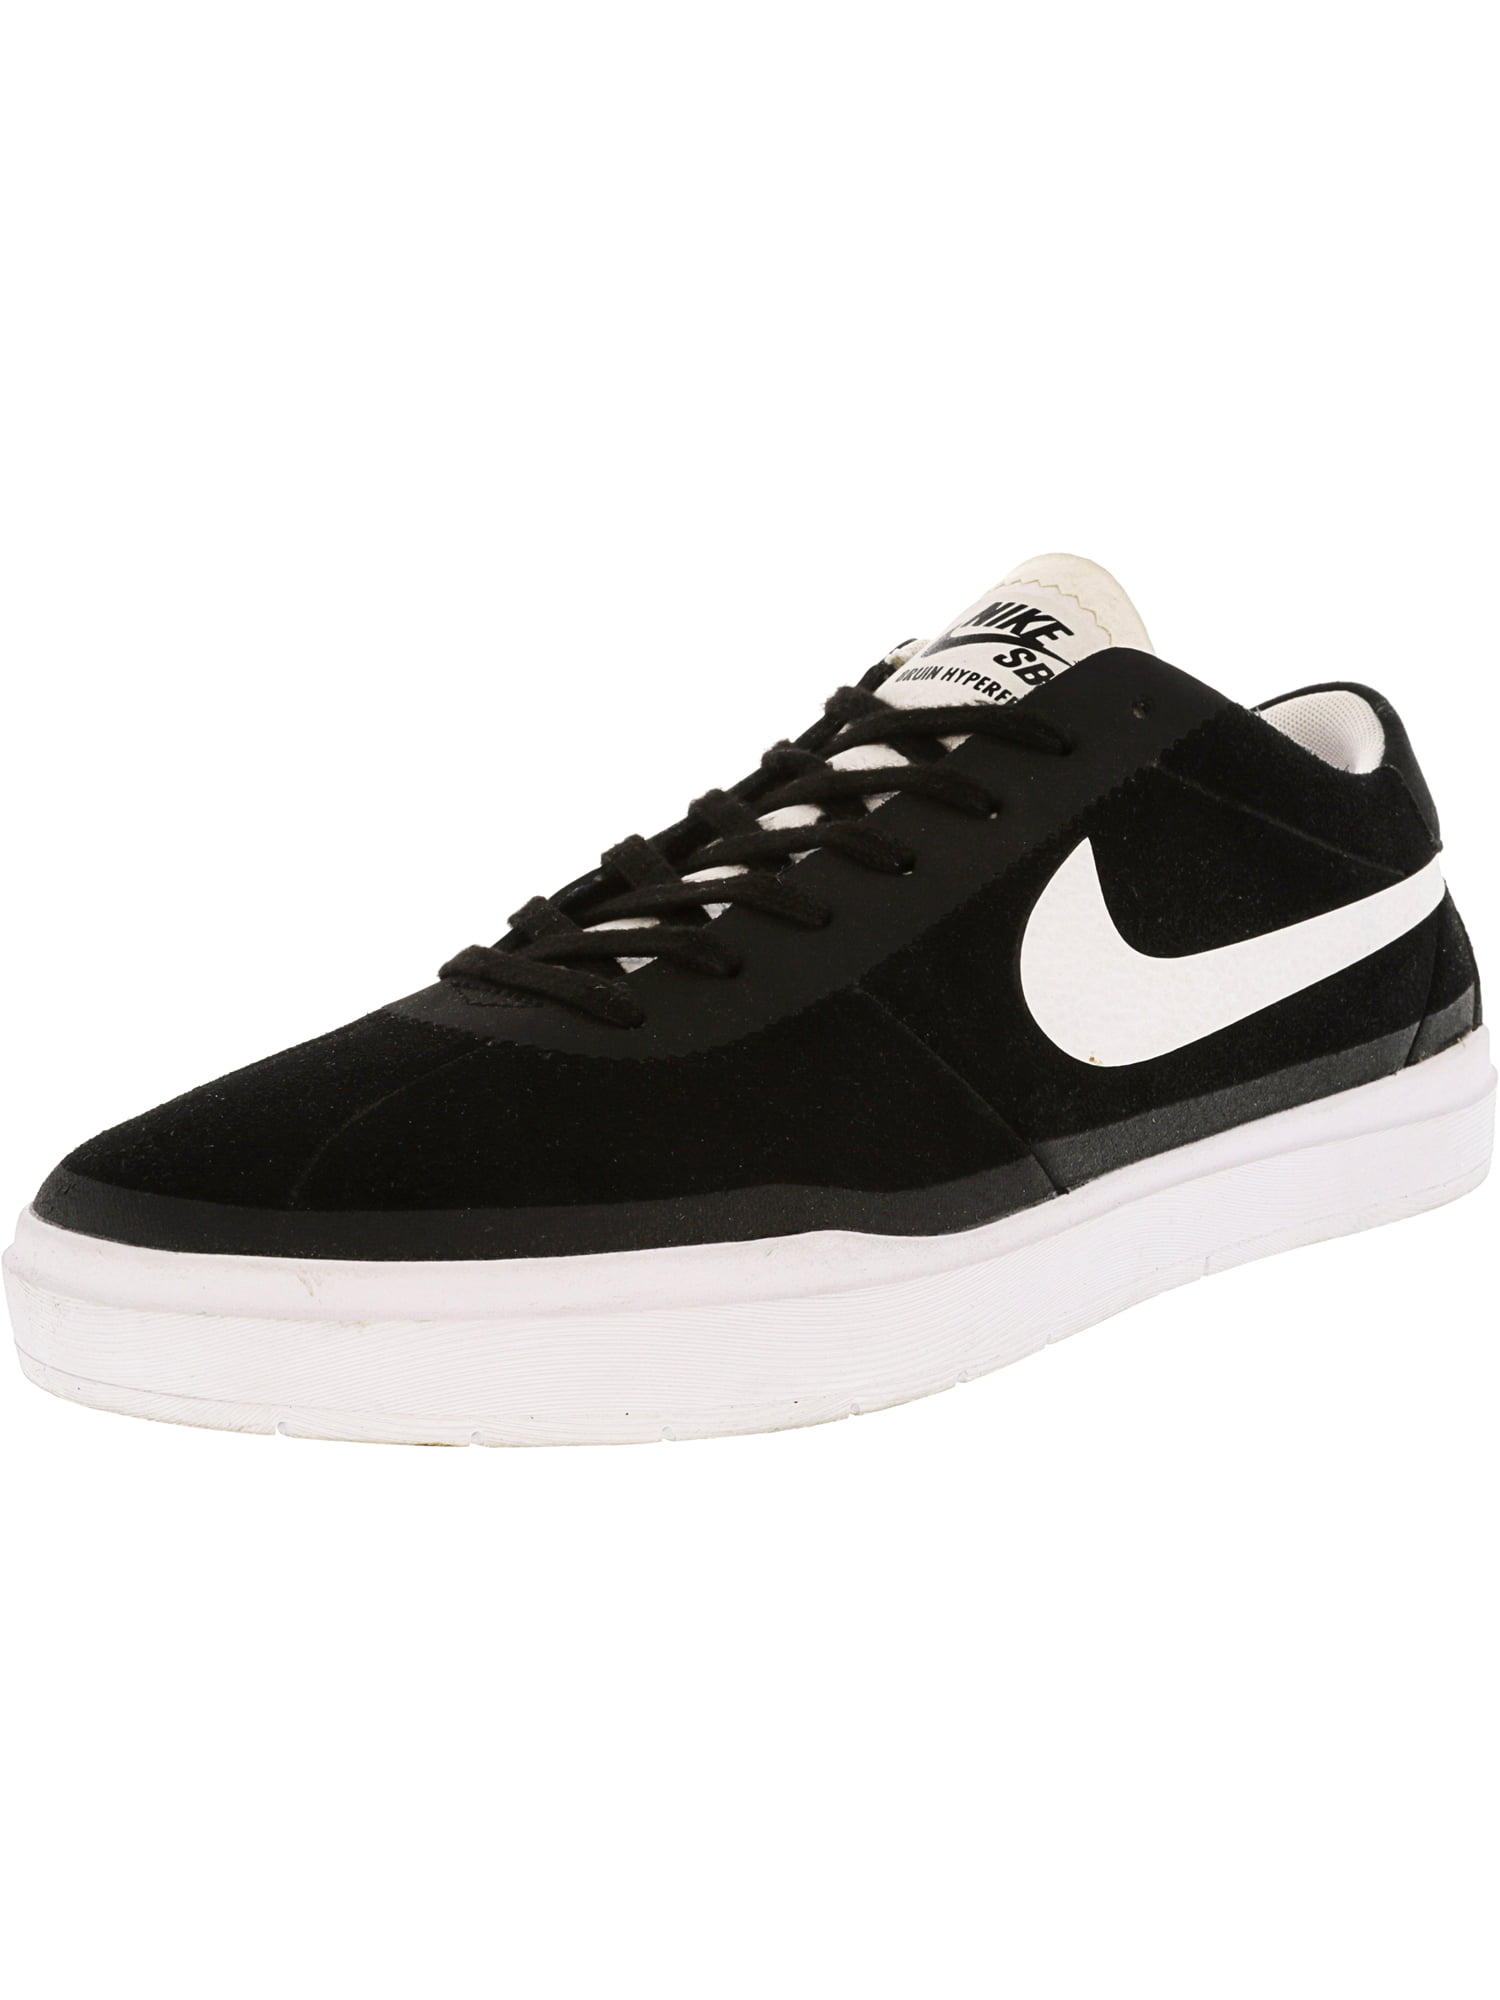 Verdrag Manier Pasen Nike Men's Sb Bruin Hyperfeel Black / White Ankle-High Suede Skateboarding  Shoe - 10.5M - Walmart.com